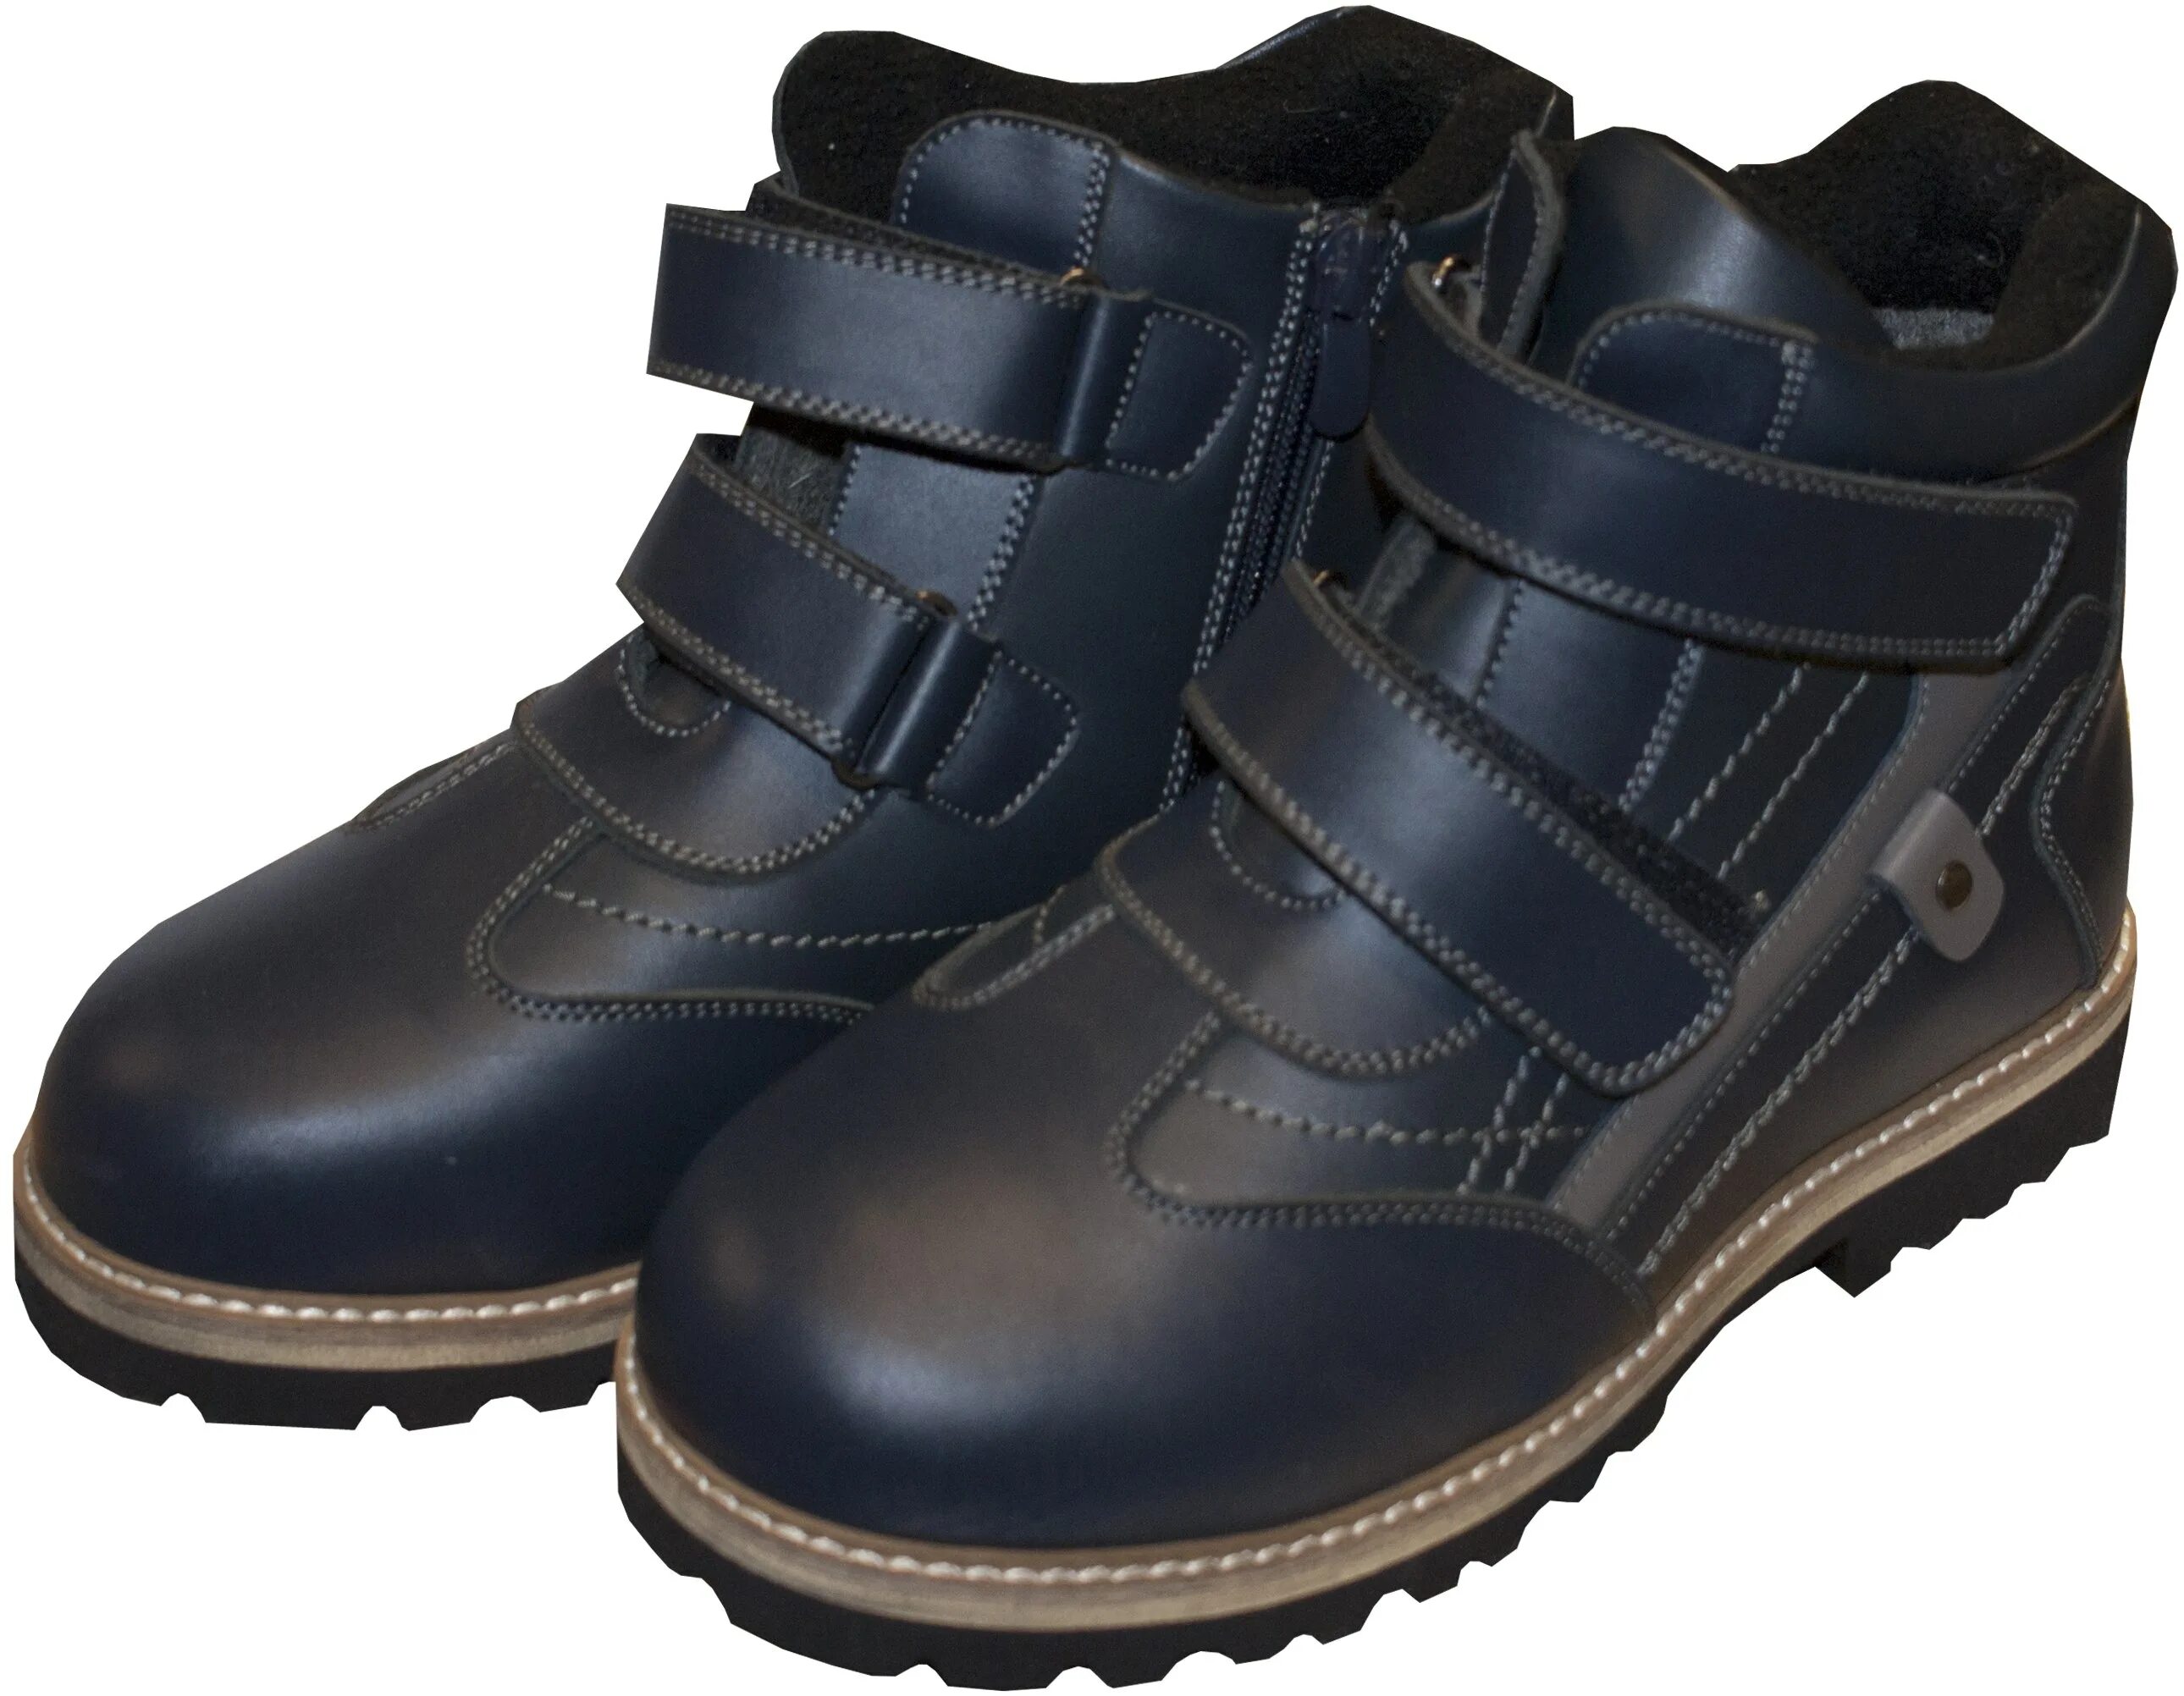 Ботинки Баркито для мальчика. Ботинки для мальчиков арт. 22117028. Обувь детская для мальчишек ботинки. Зимняя обувь для мальчиков. Авито ботинки мальчику